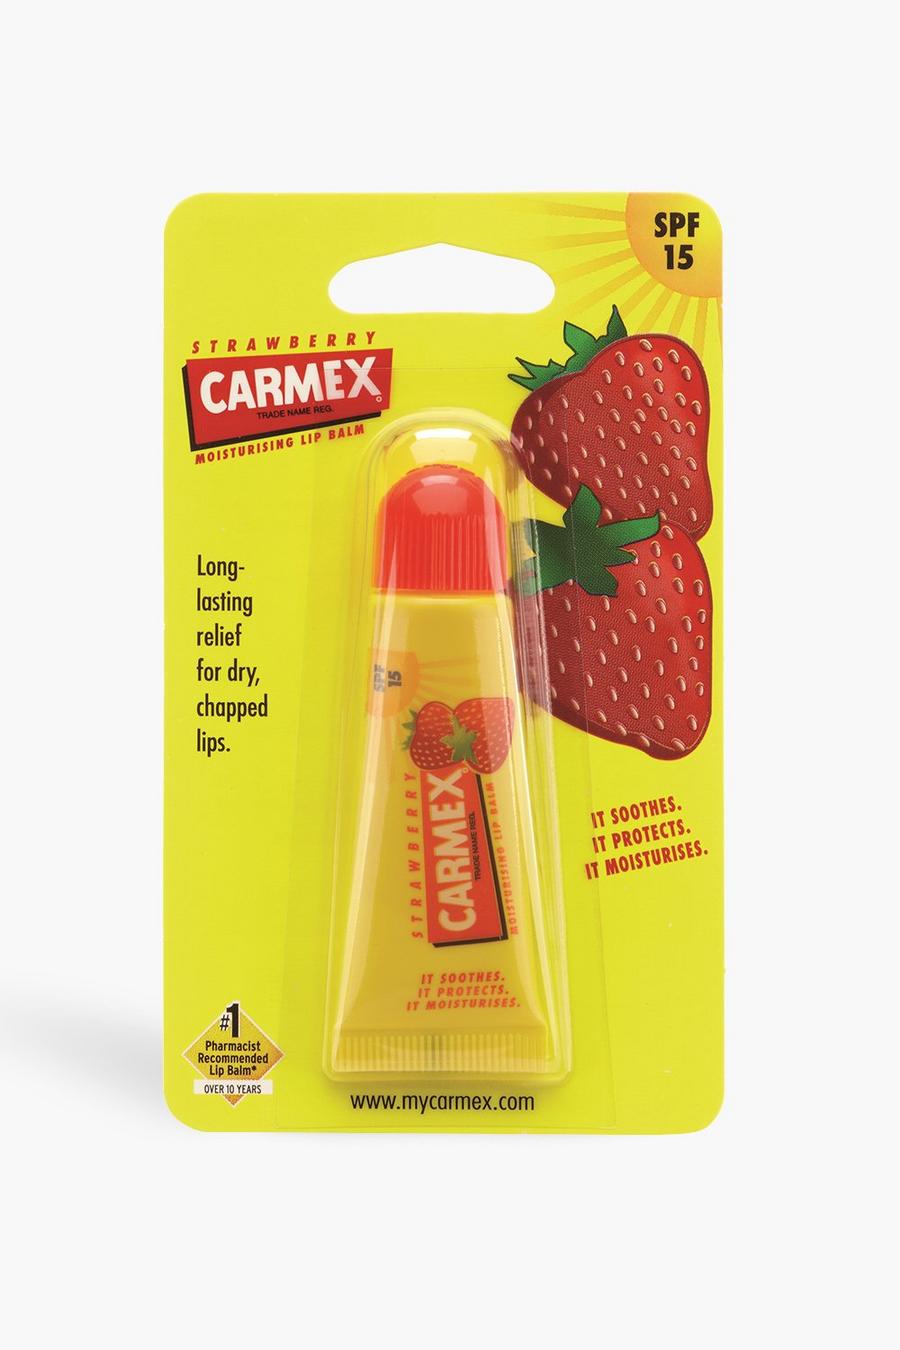 Yellow jaune Carmex Strawberry Tube 10g